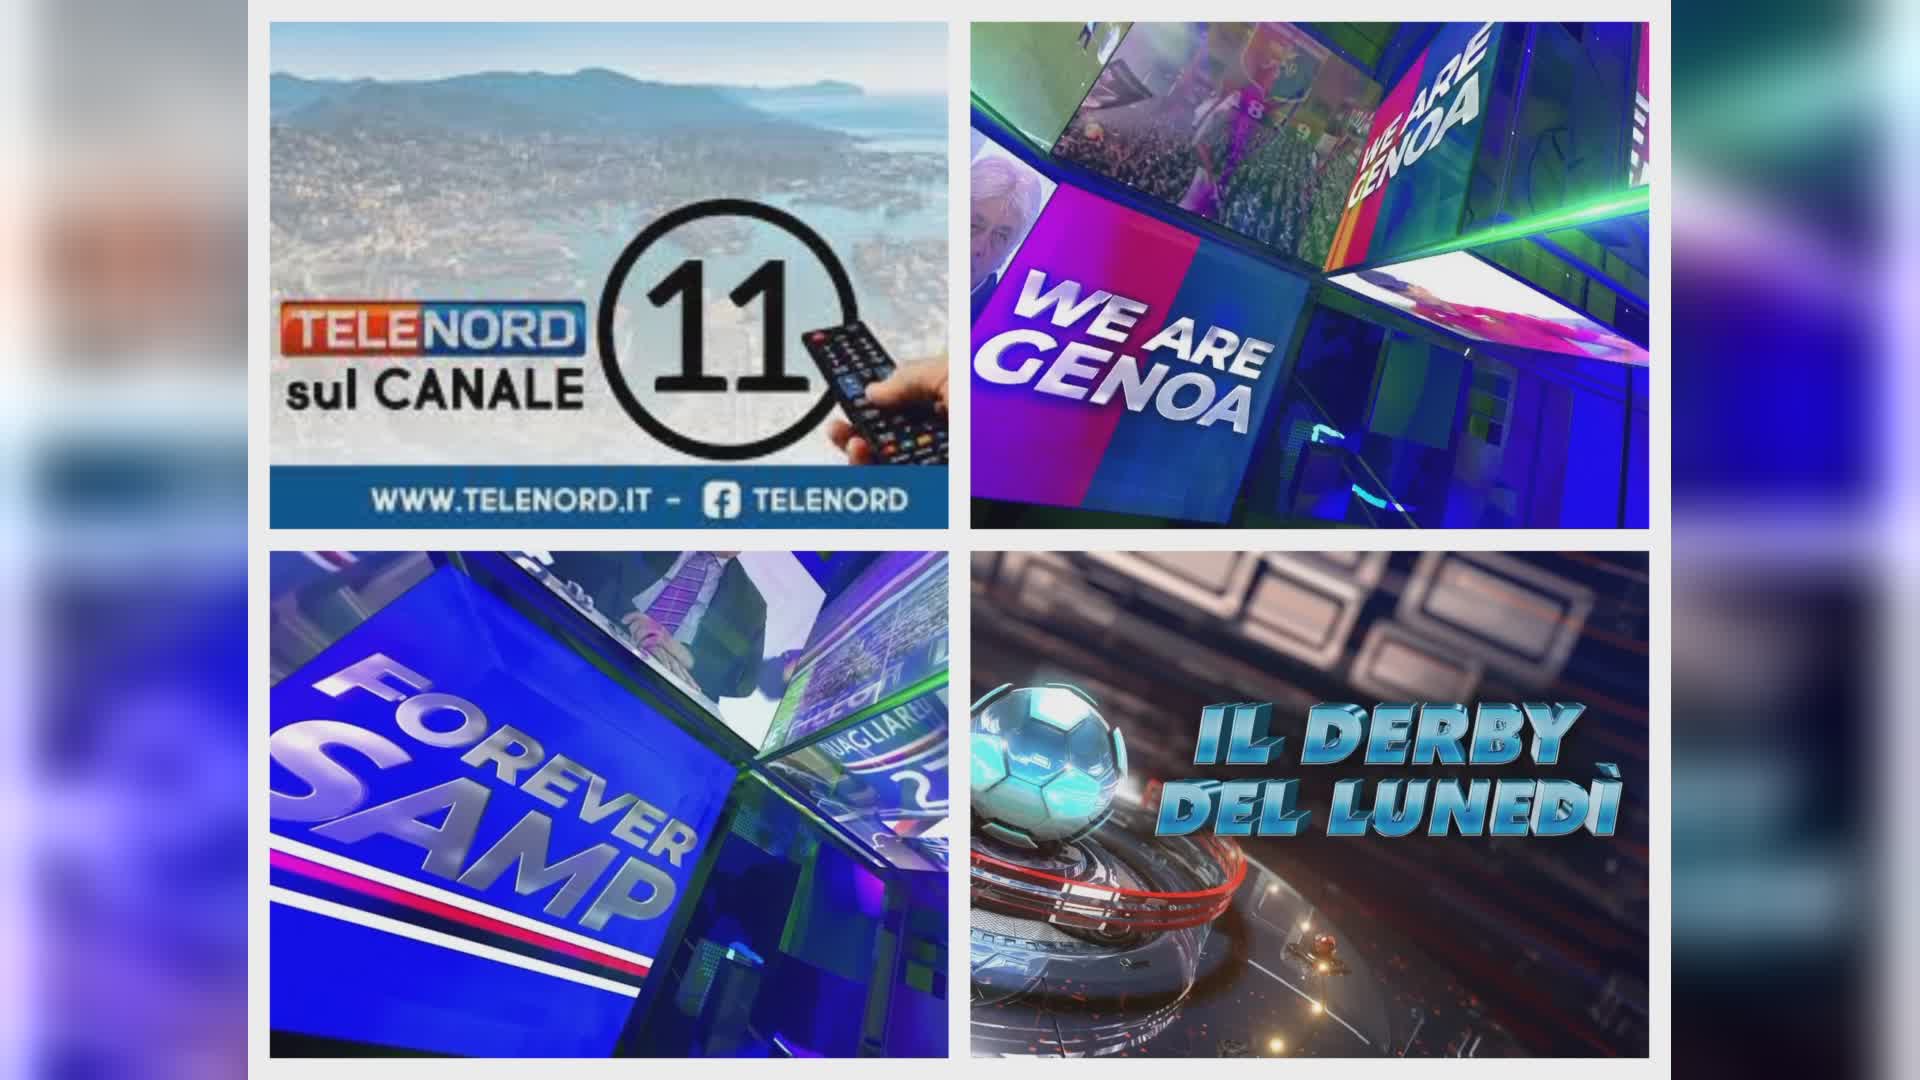 Telenord rinnova la programmazione sportiva: "We are Genoa" al martedì, "Forever Samp" di domenica